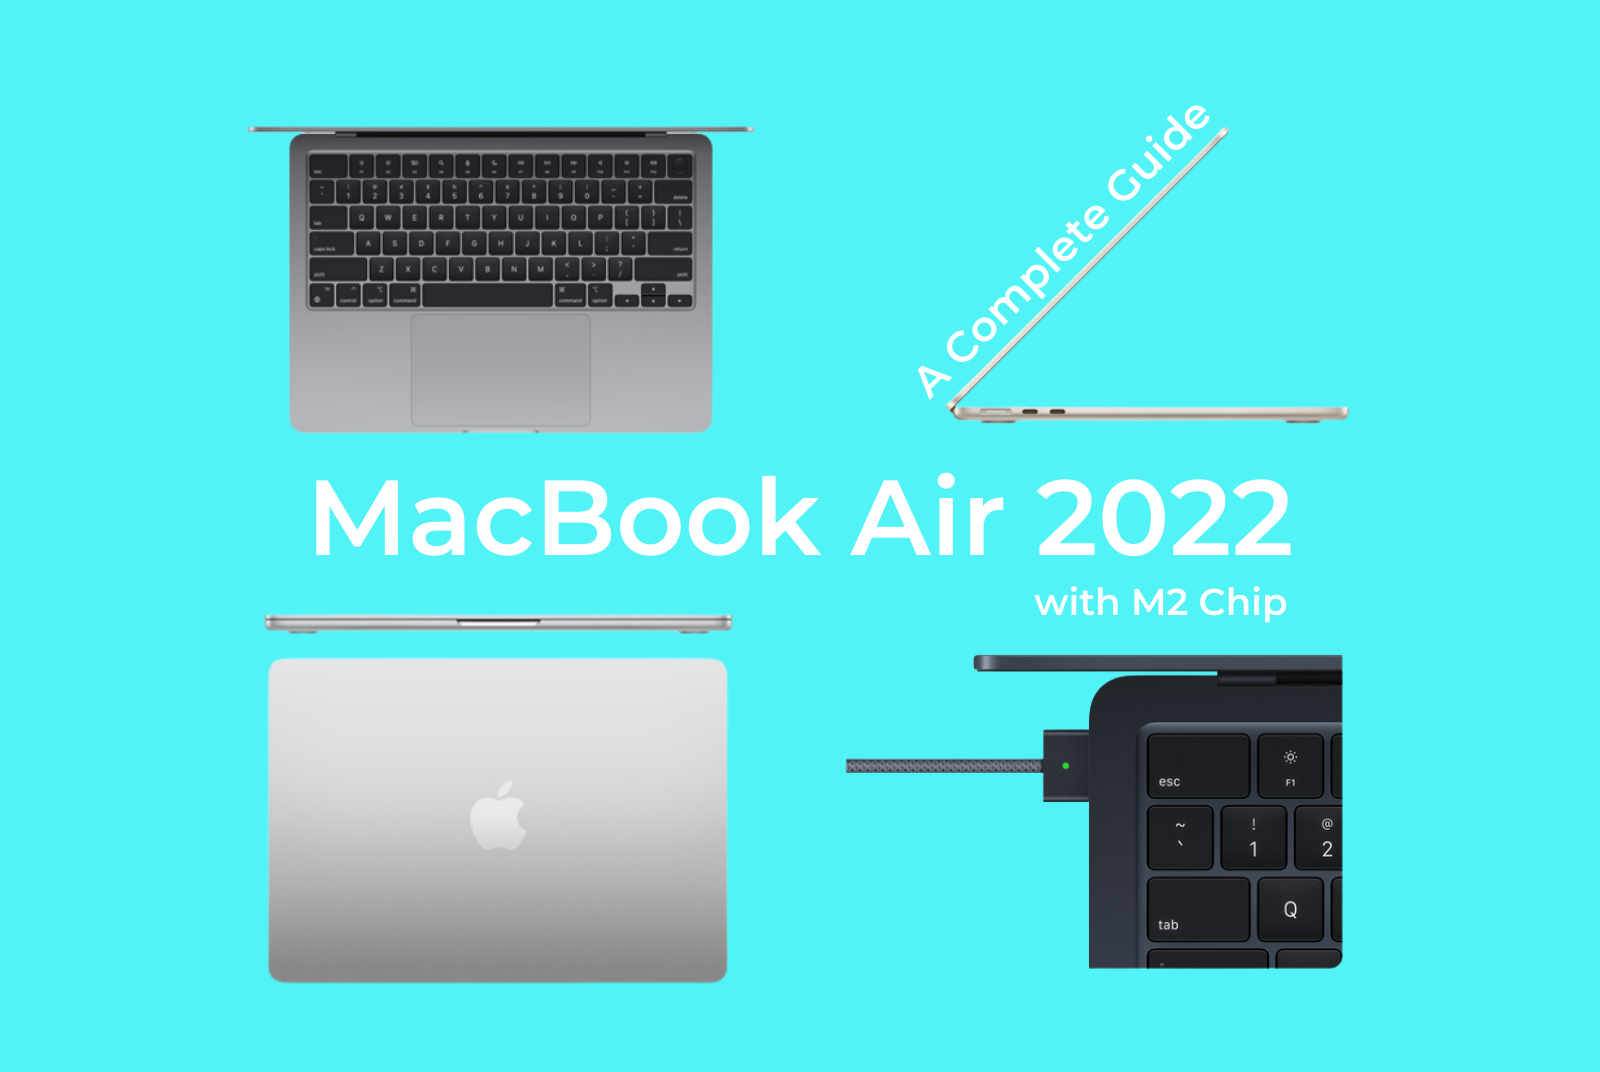 Macbook Air 2022